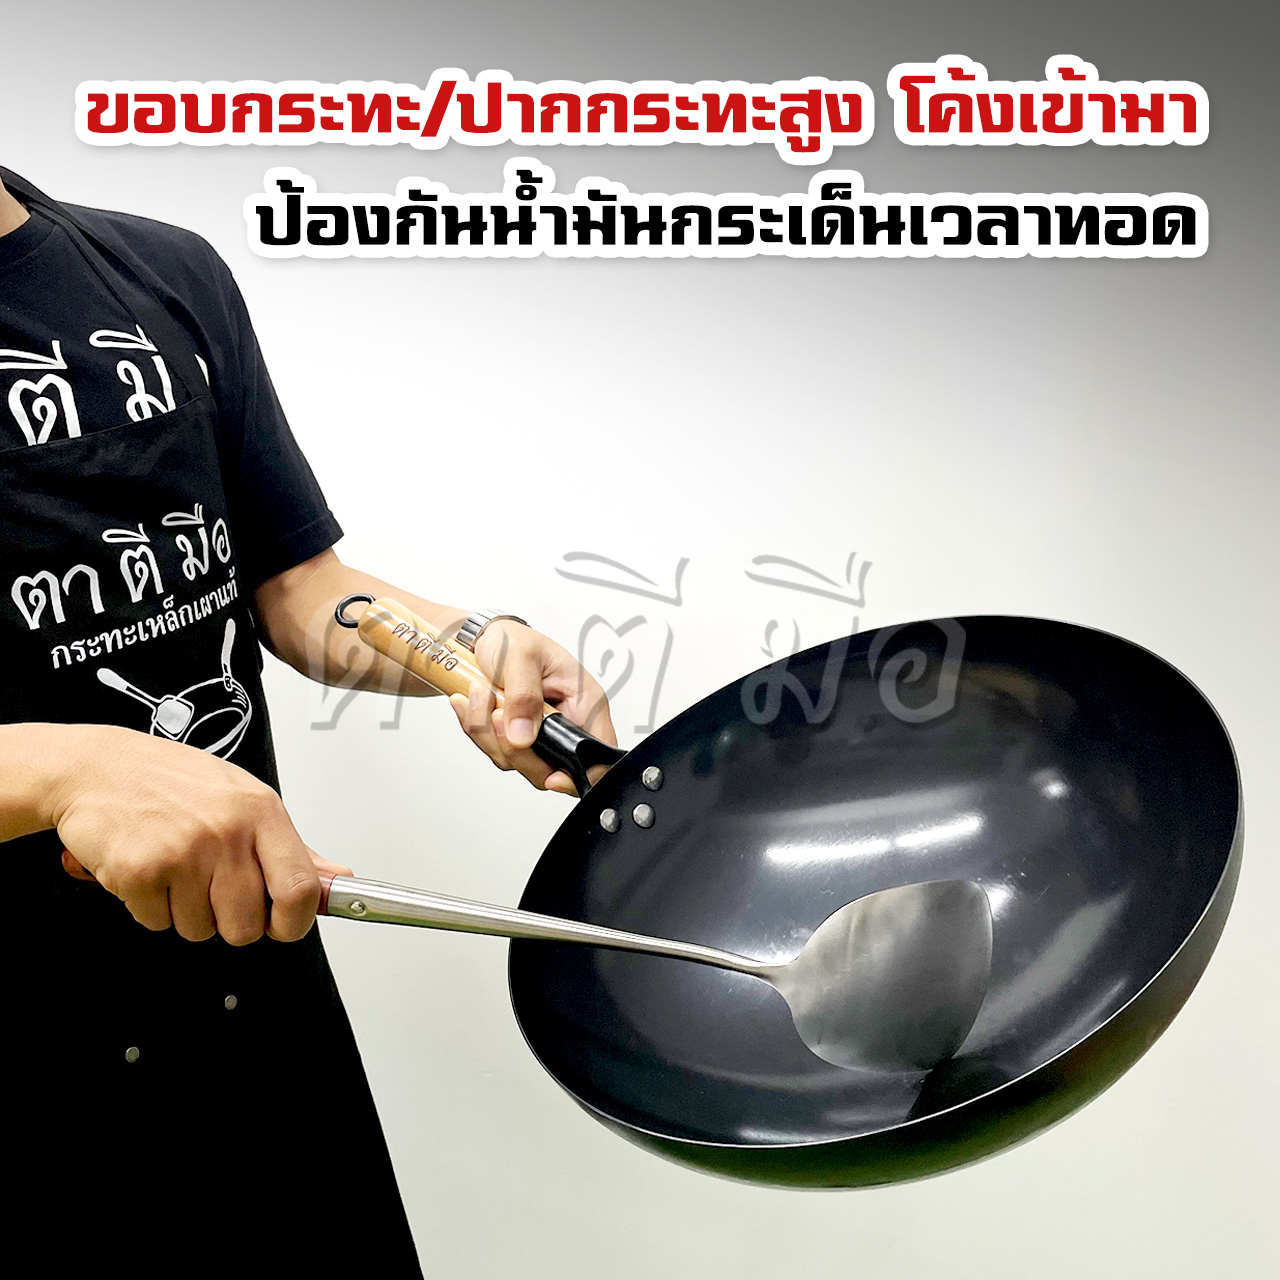 ตาตีมือ กระทะเหล็กเผา รุ่นใหม่ Easy-cook ใช้ง่าย ไม่ต้องเคลือบน้ำมัน กระทะเหล็กเผาแล้ว พร้อมใช้งาน ของแท้ ฝีมือคนไทย รับประกันสินค้า 10 ปี